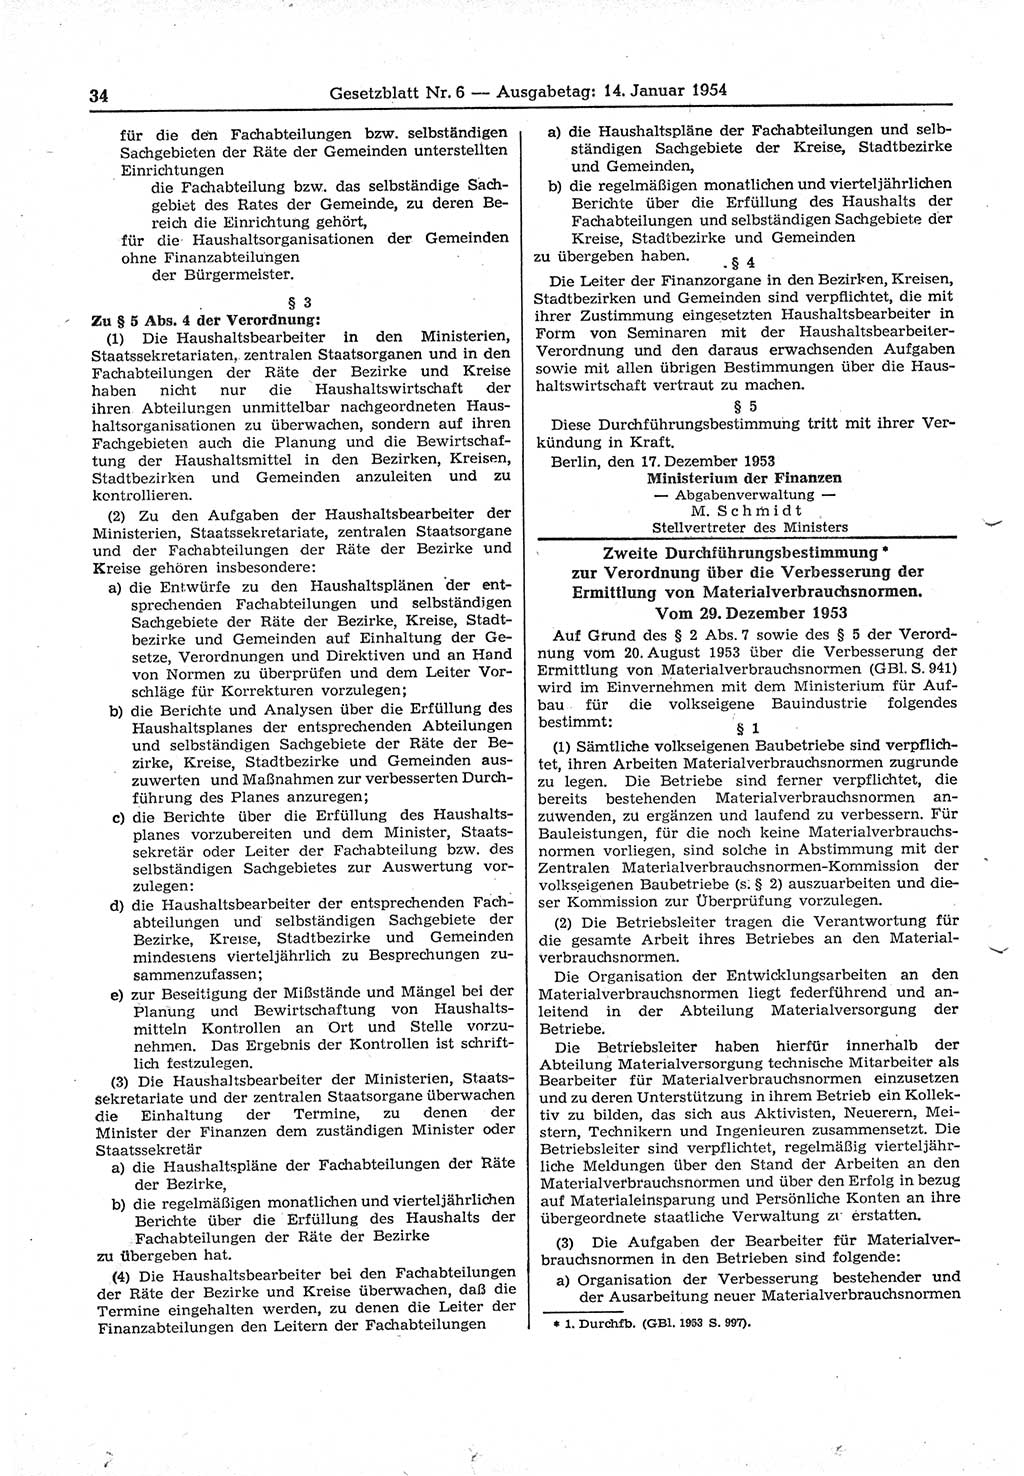 Gesetzblatt (GBl.) der Deutschen Demokratischen Republik (DDR) 1954, Seite 34 (GBl. DDR 1954, S. 34)